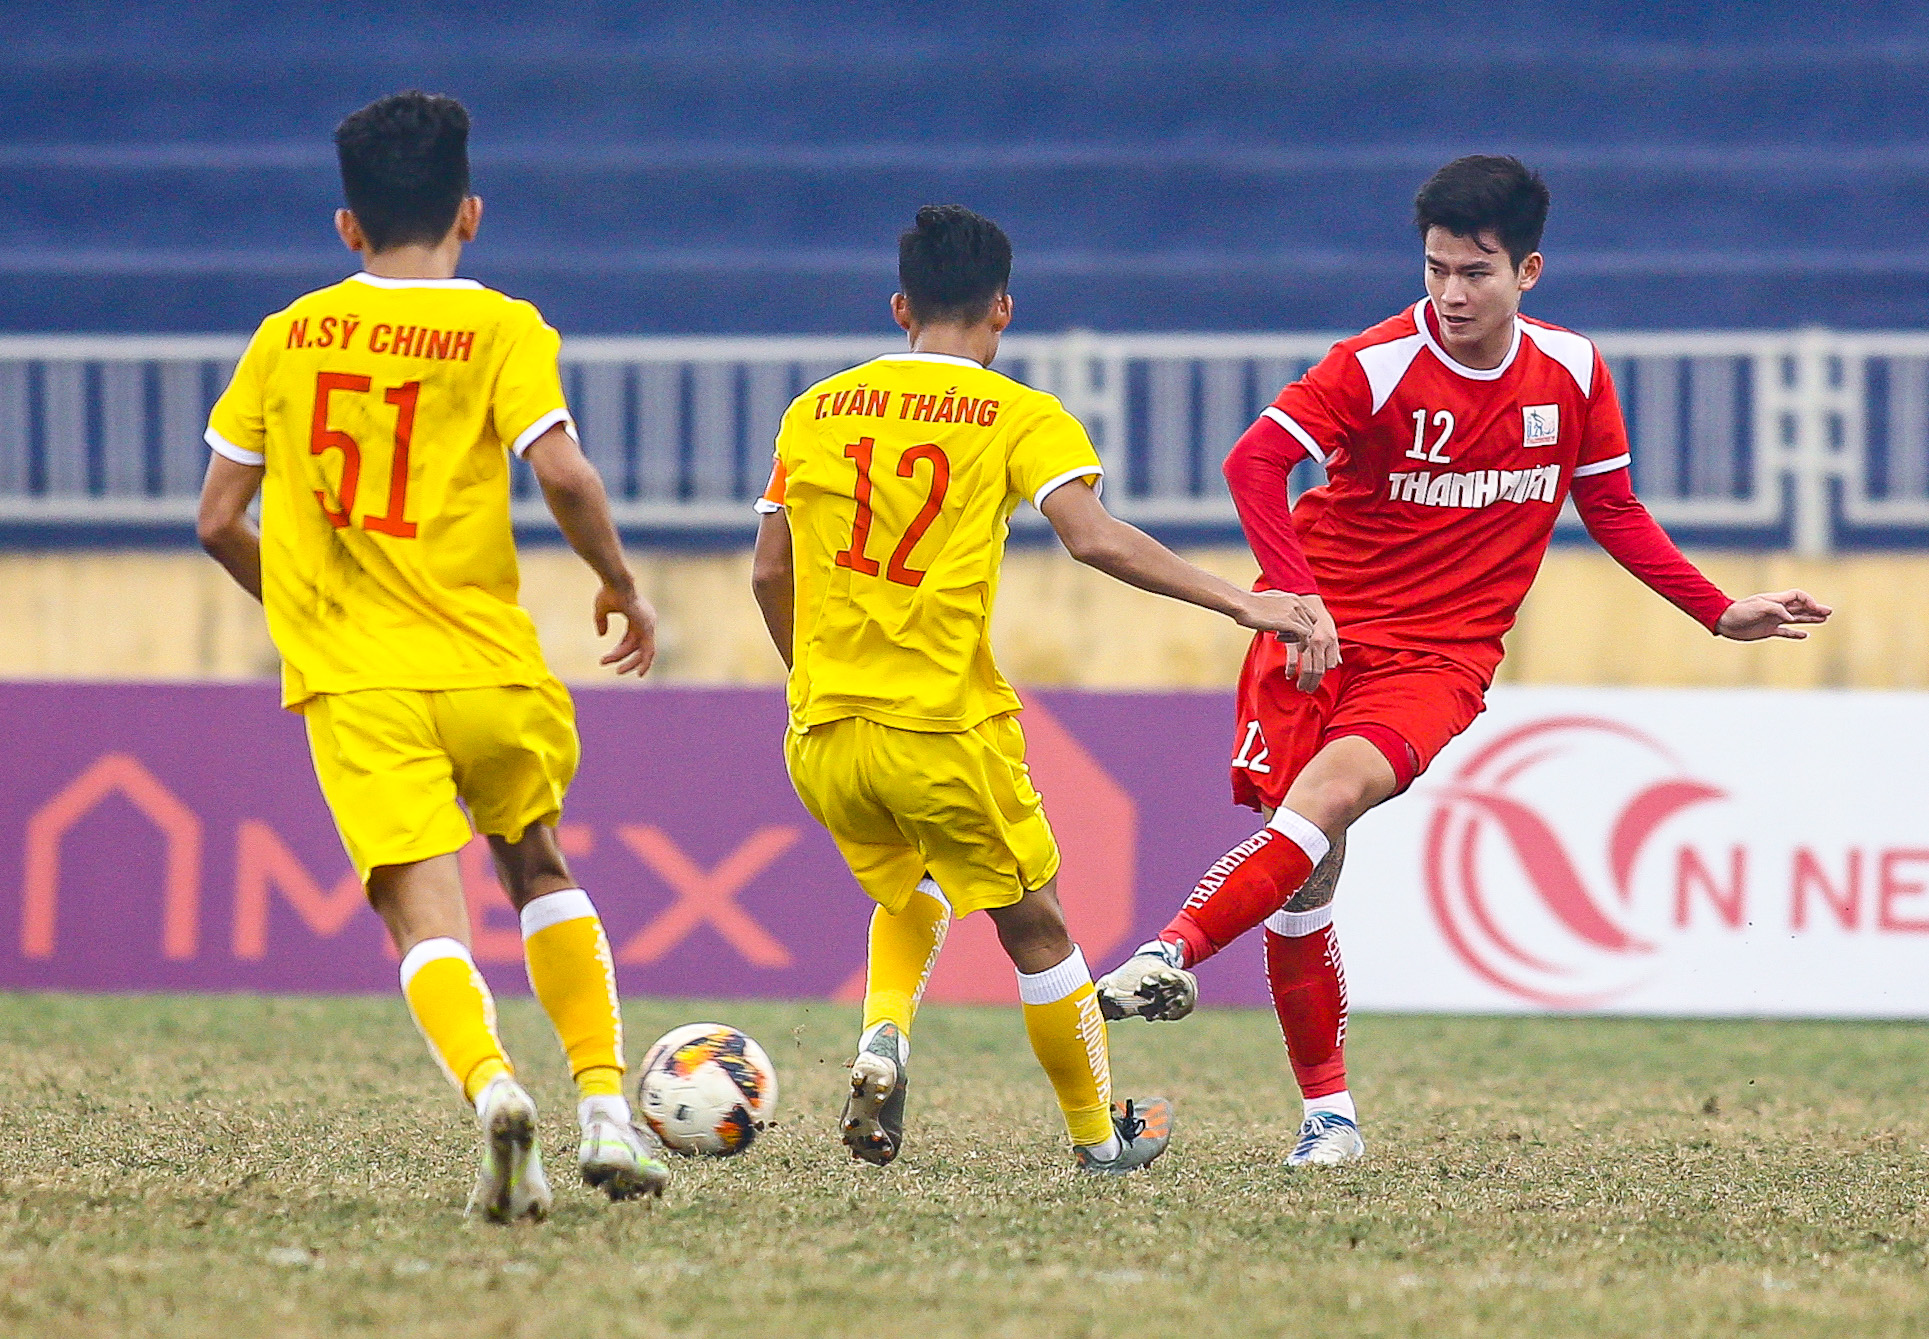 Như thường lệ, Phan Tuấn Tài vẫn là điểm sáng trong đội hình U21 Viettel. Số 12 thi đấu chắc chắn bên phía hành lan cánh phải của đội nhà.